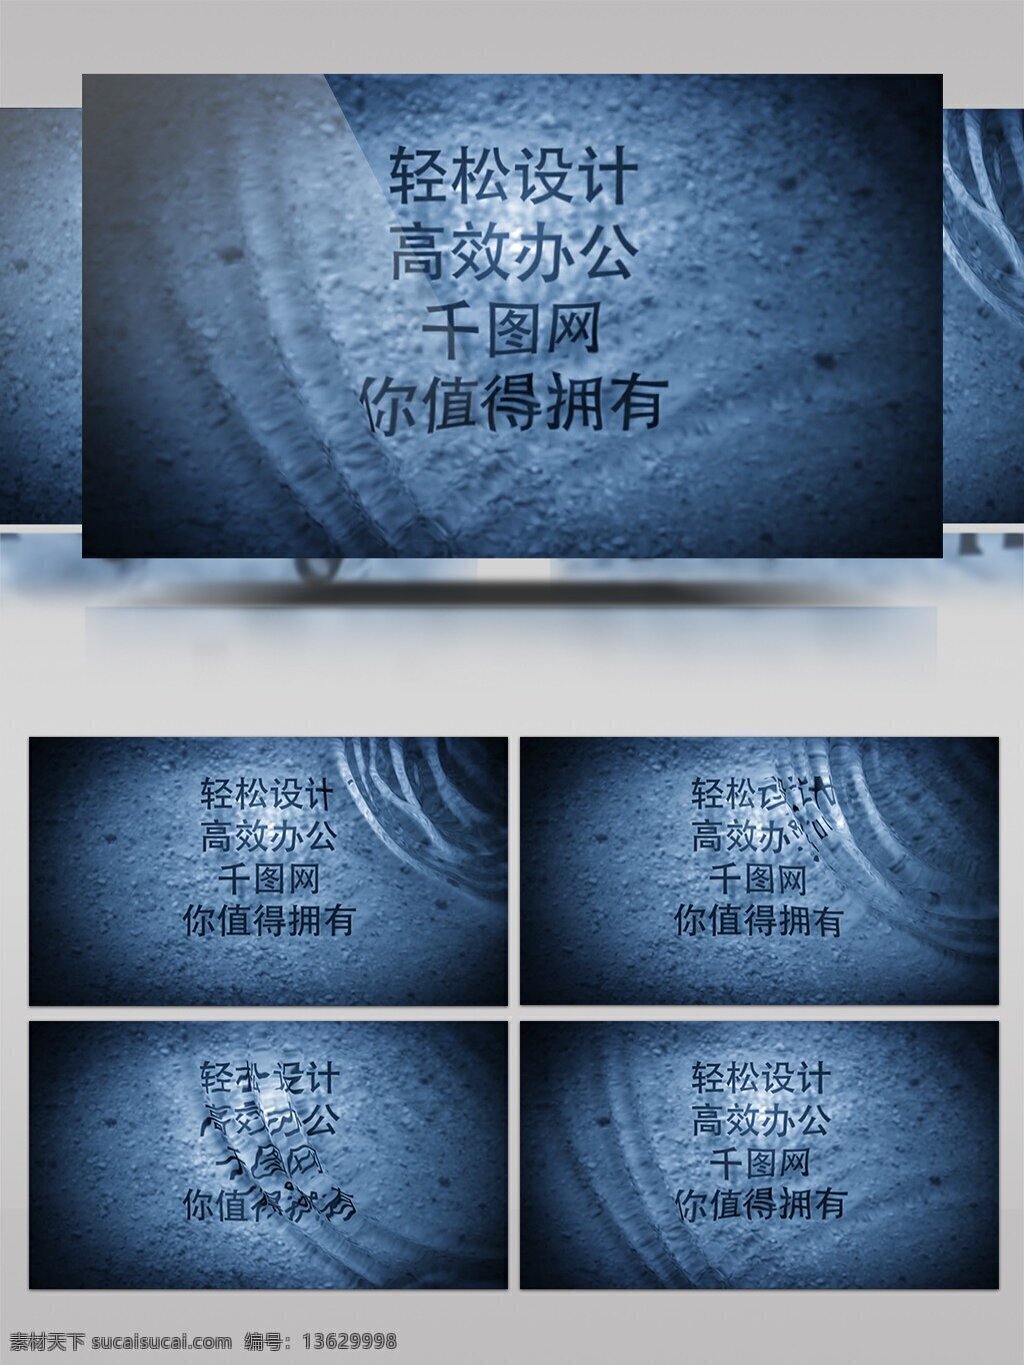 水 波纹 文字 展示 水波纹 蓝色 简约风 ae aep 文字图片展示